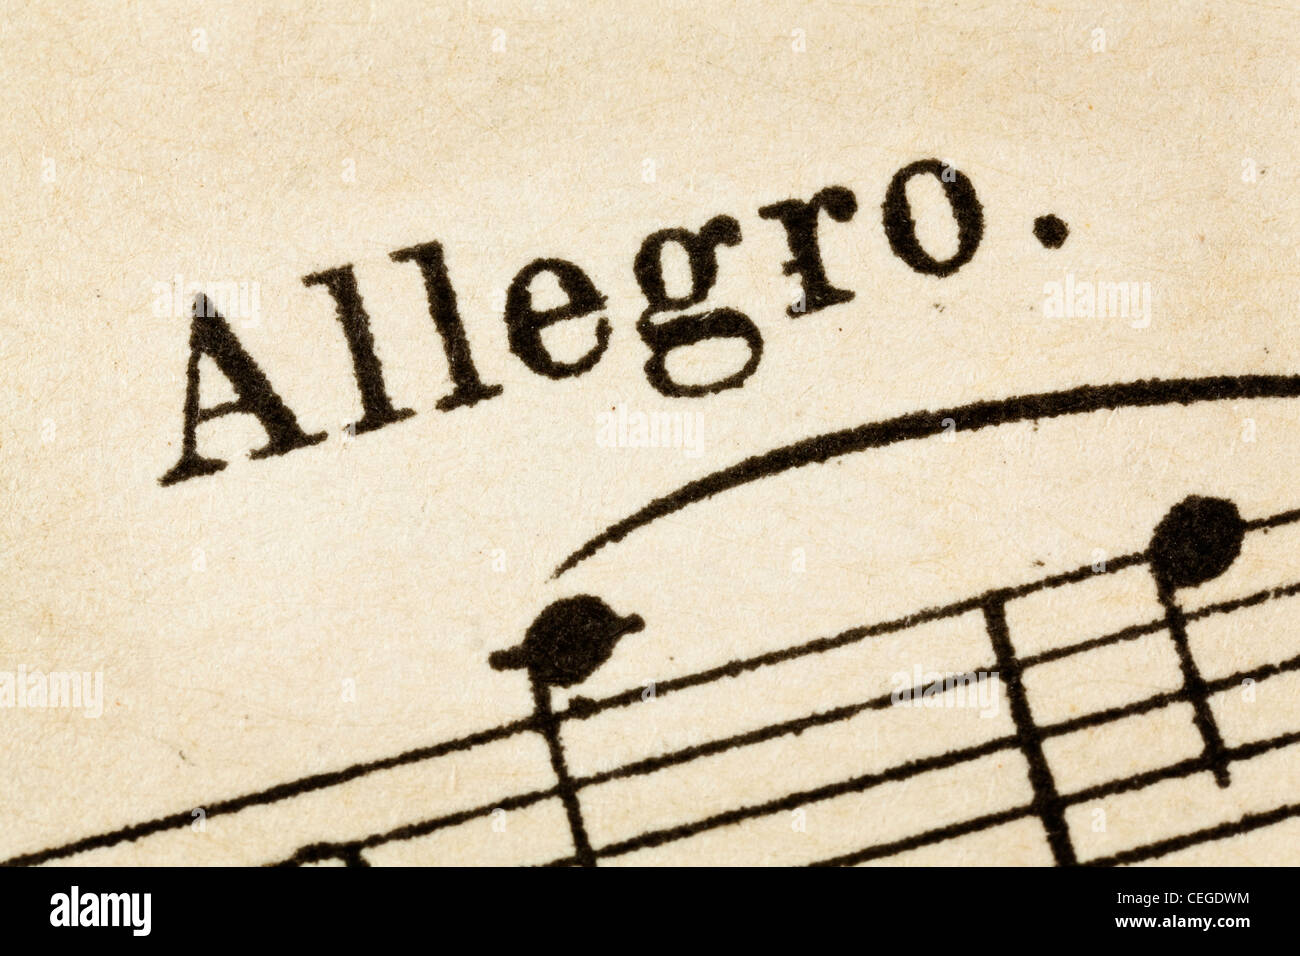 Allegro - vite, vite et lumineux - tempo musique détail macro du vintage sheet music Banque D'Images